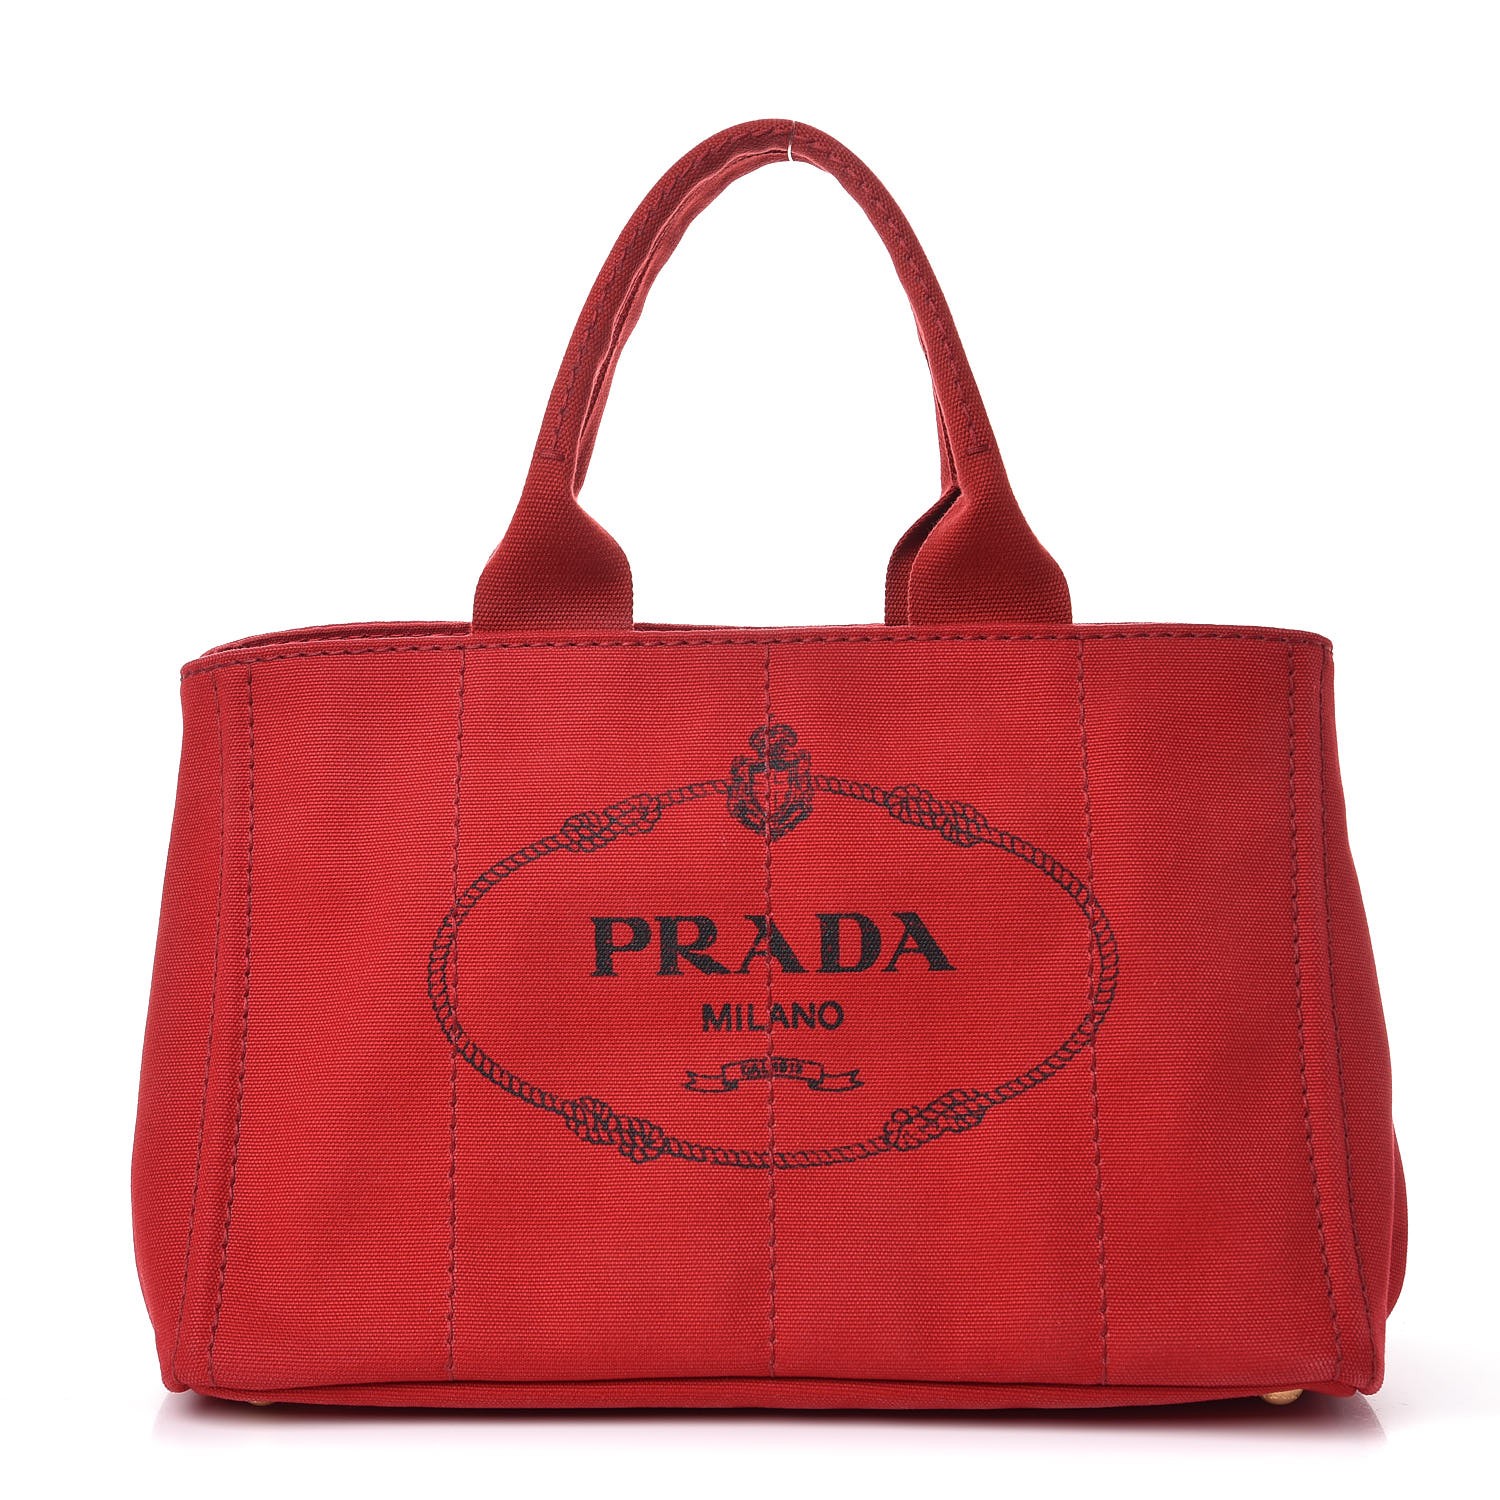 PRADA Canapa Logo Shopping Tote Rosso 313881 | FASHIONPHILE